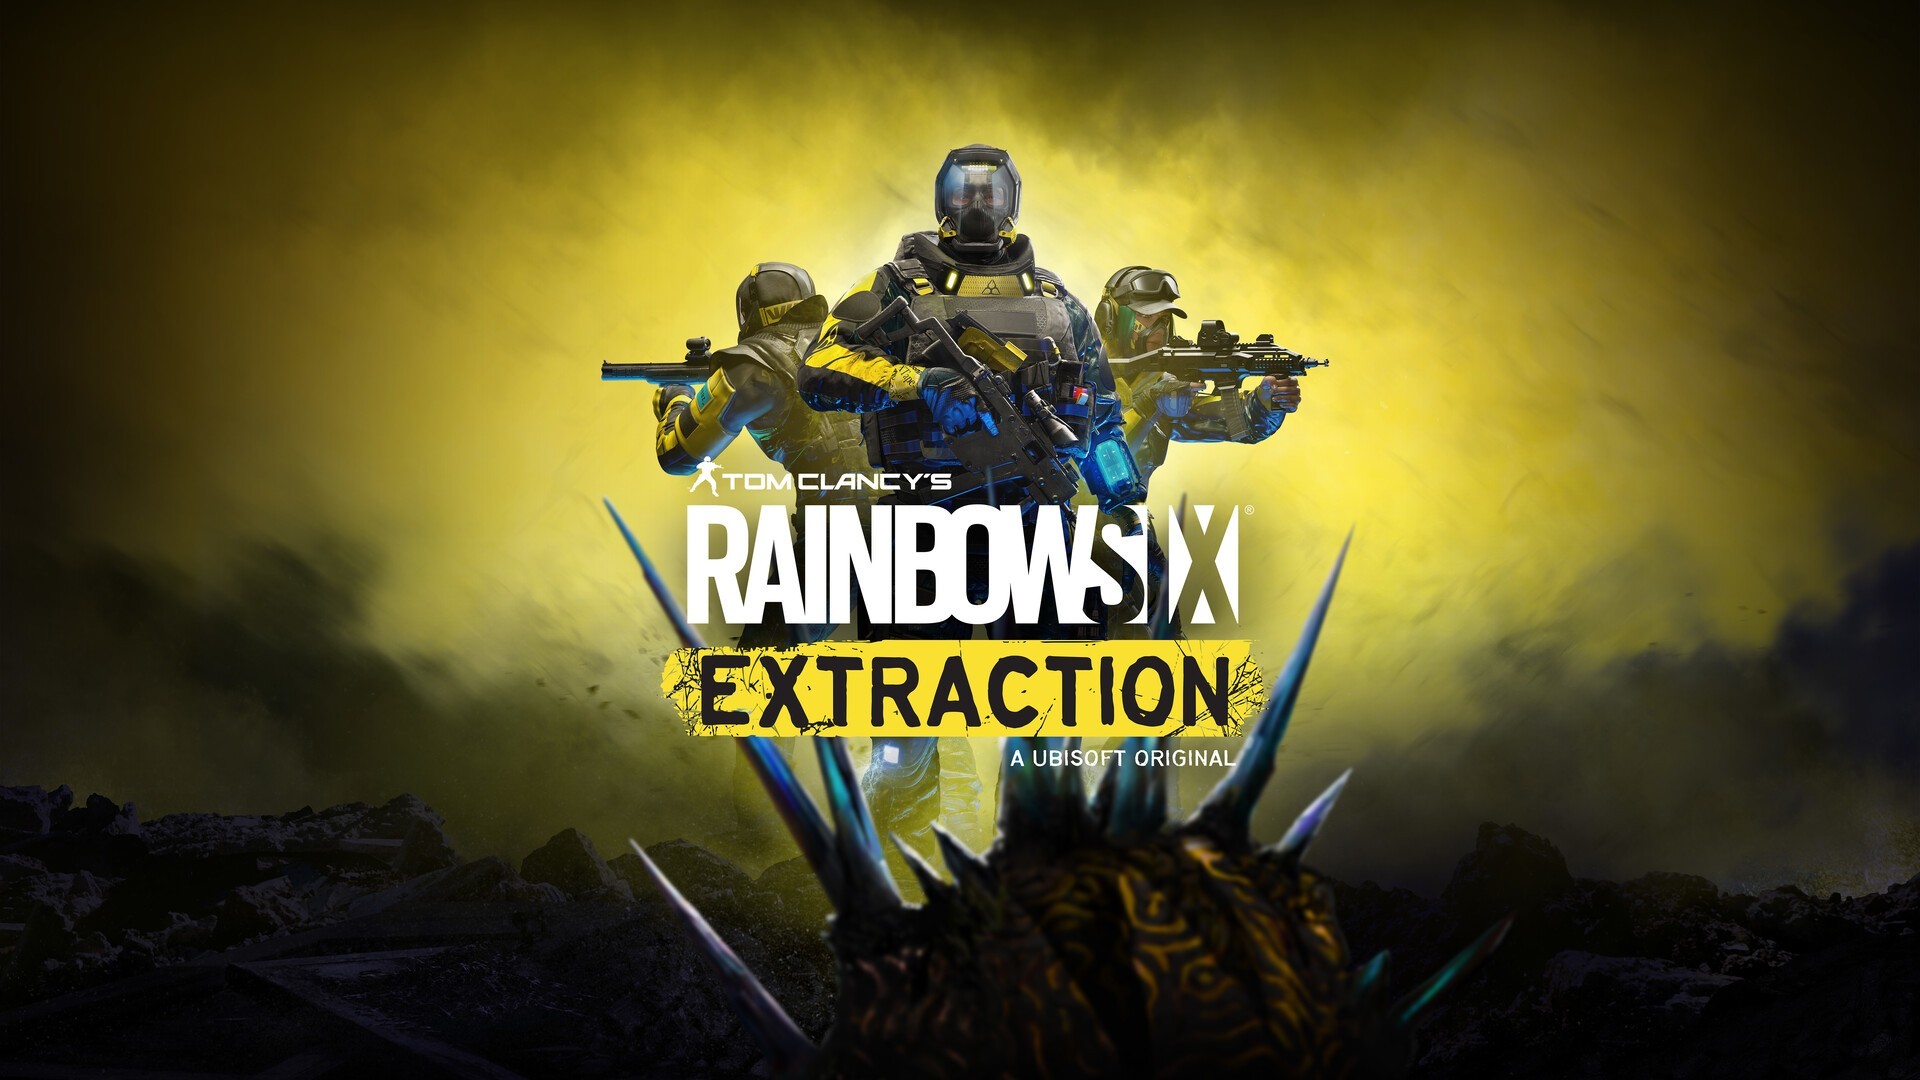 لعبة Rainbow Six Extraction | إغاثة - Ubisoft - يوبي سوفت - رينبو